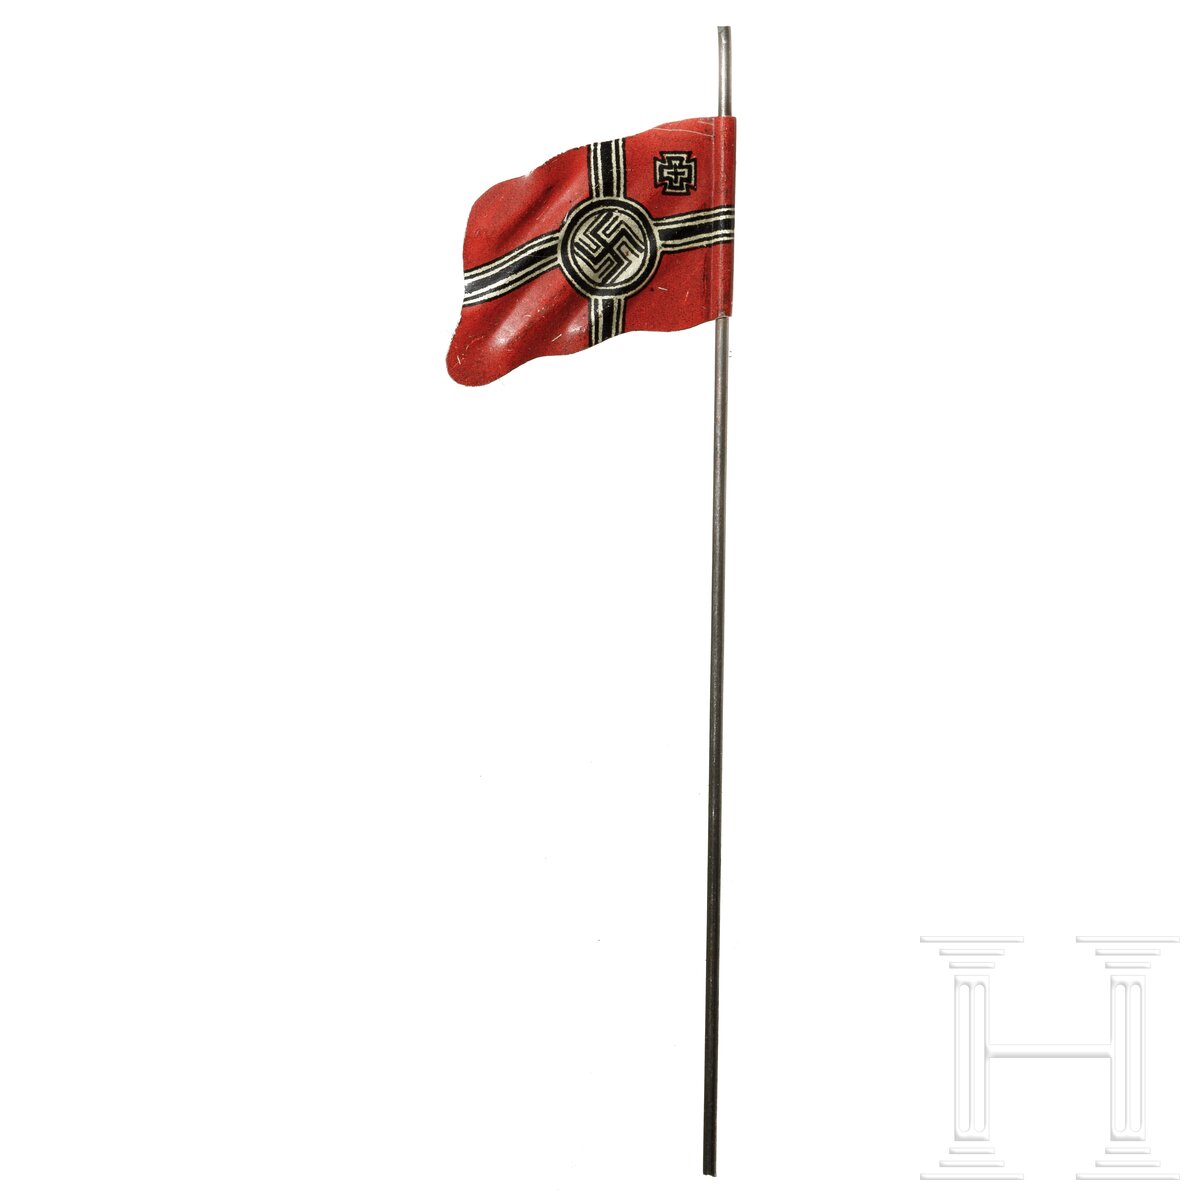 15 englische und deutsche Elastolin- und Lineol-Soldaten sowie eine Blechflagge - Image 6 of 7